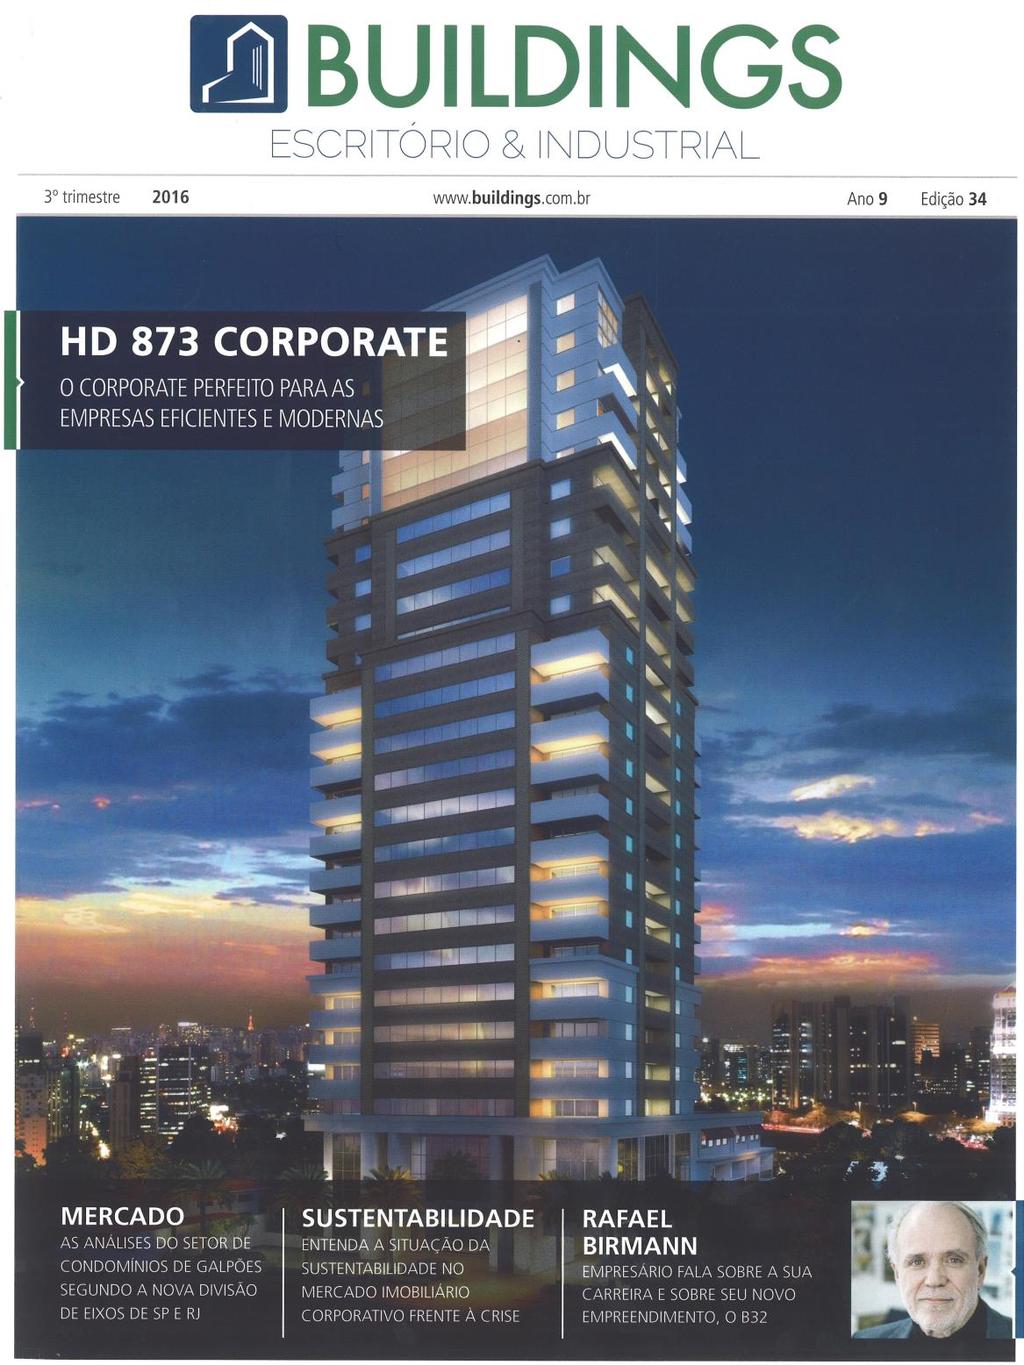 O empreendimento HD873 foi destaque do 3º trimestre da revista Buildings.